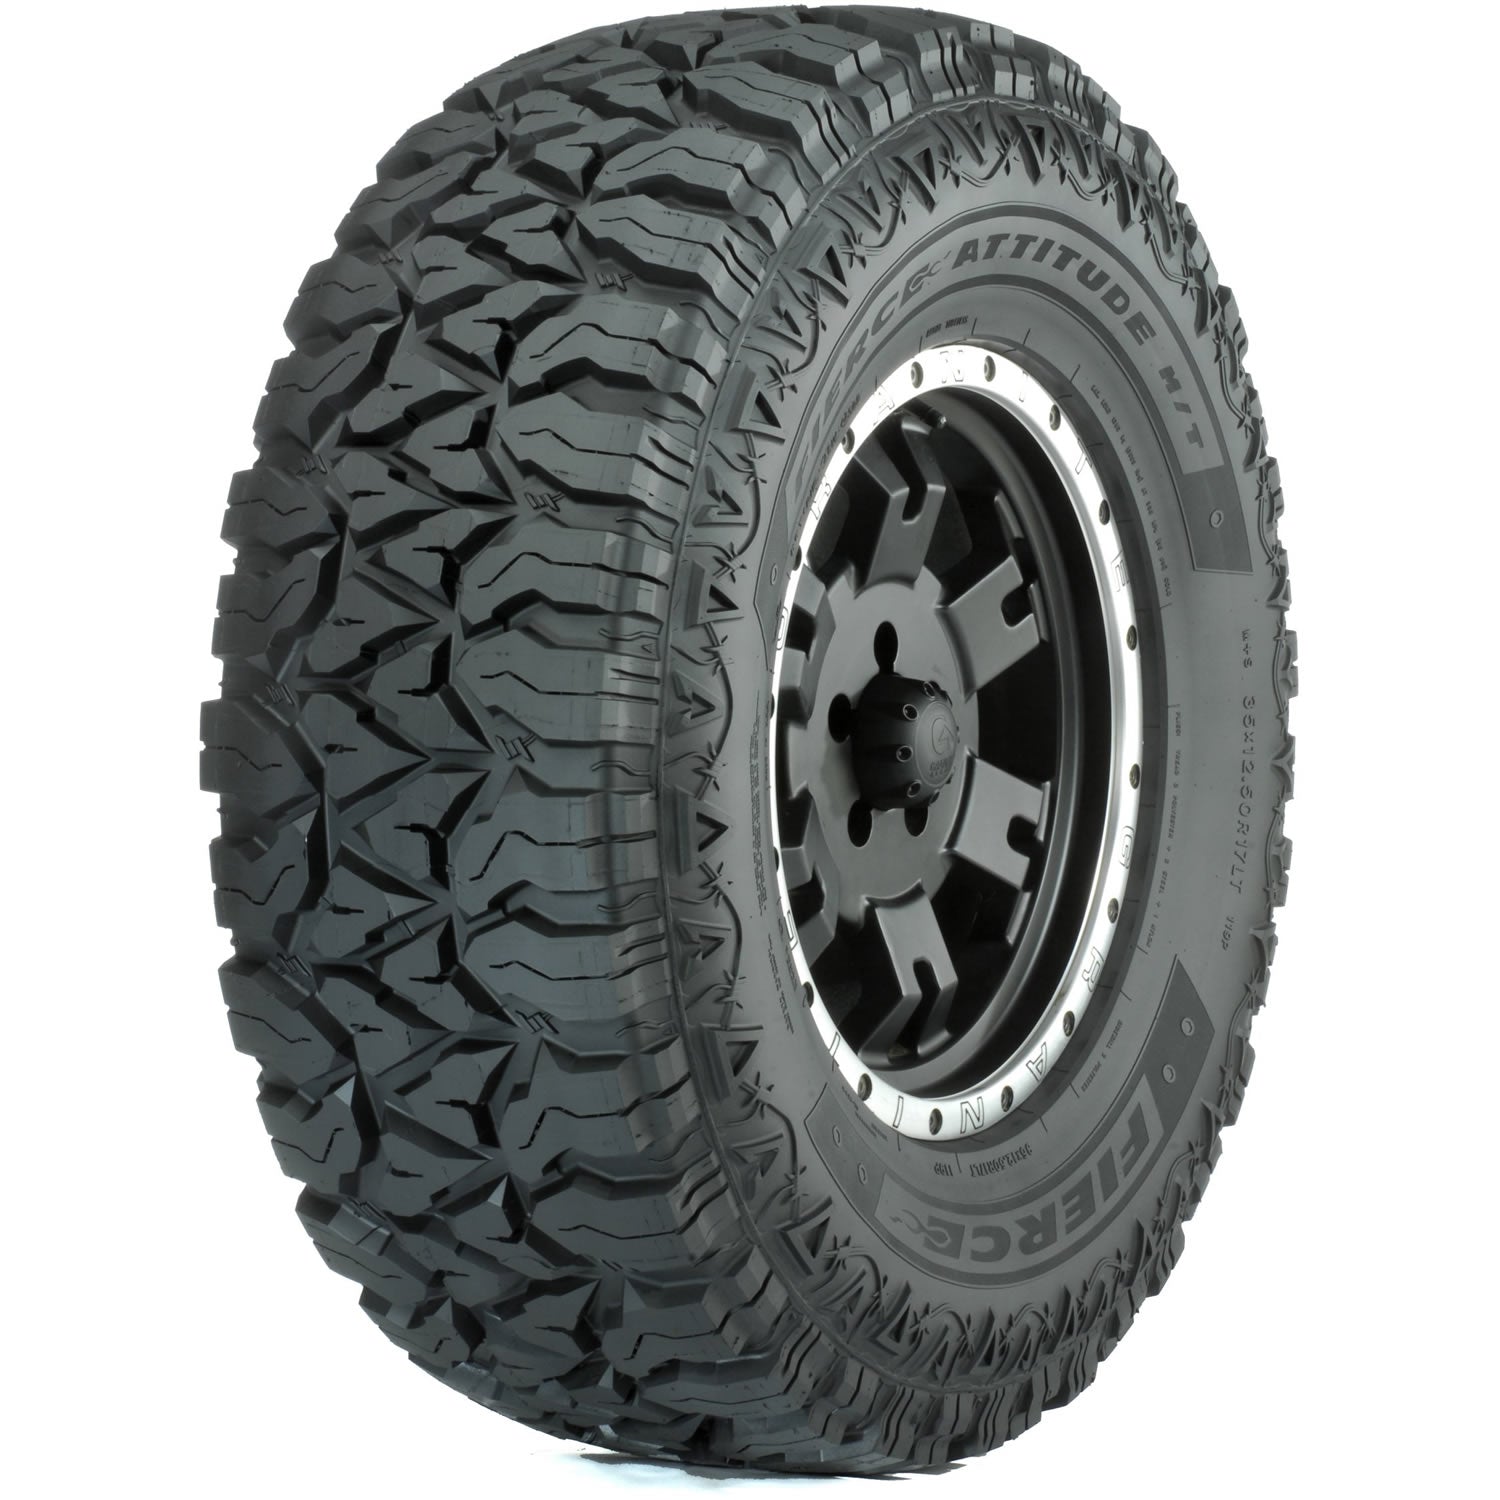 FIERCE ATTITUDE MT 35X12.50R20LT Tires